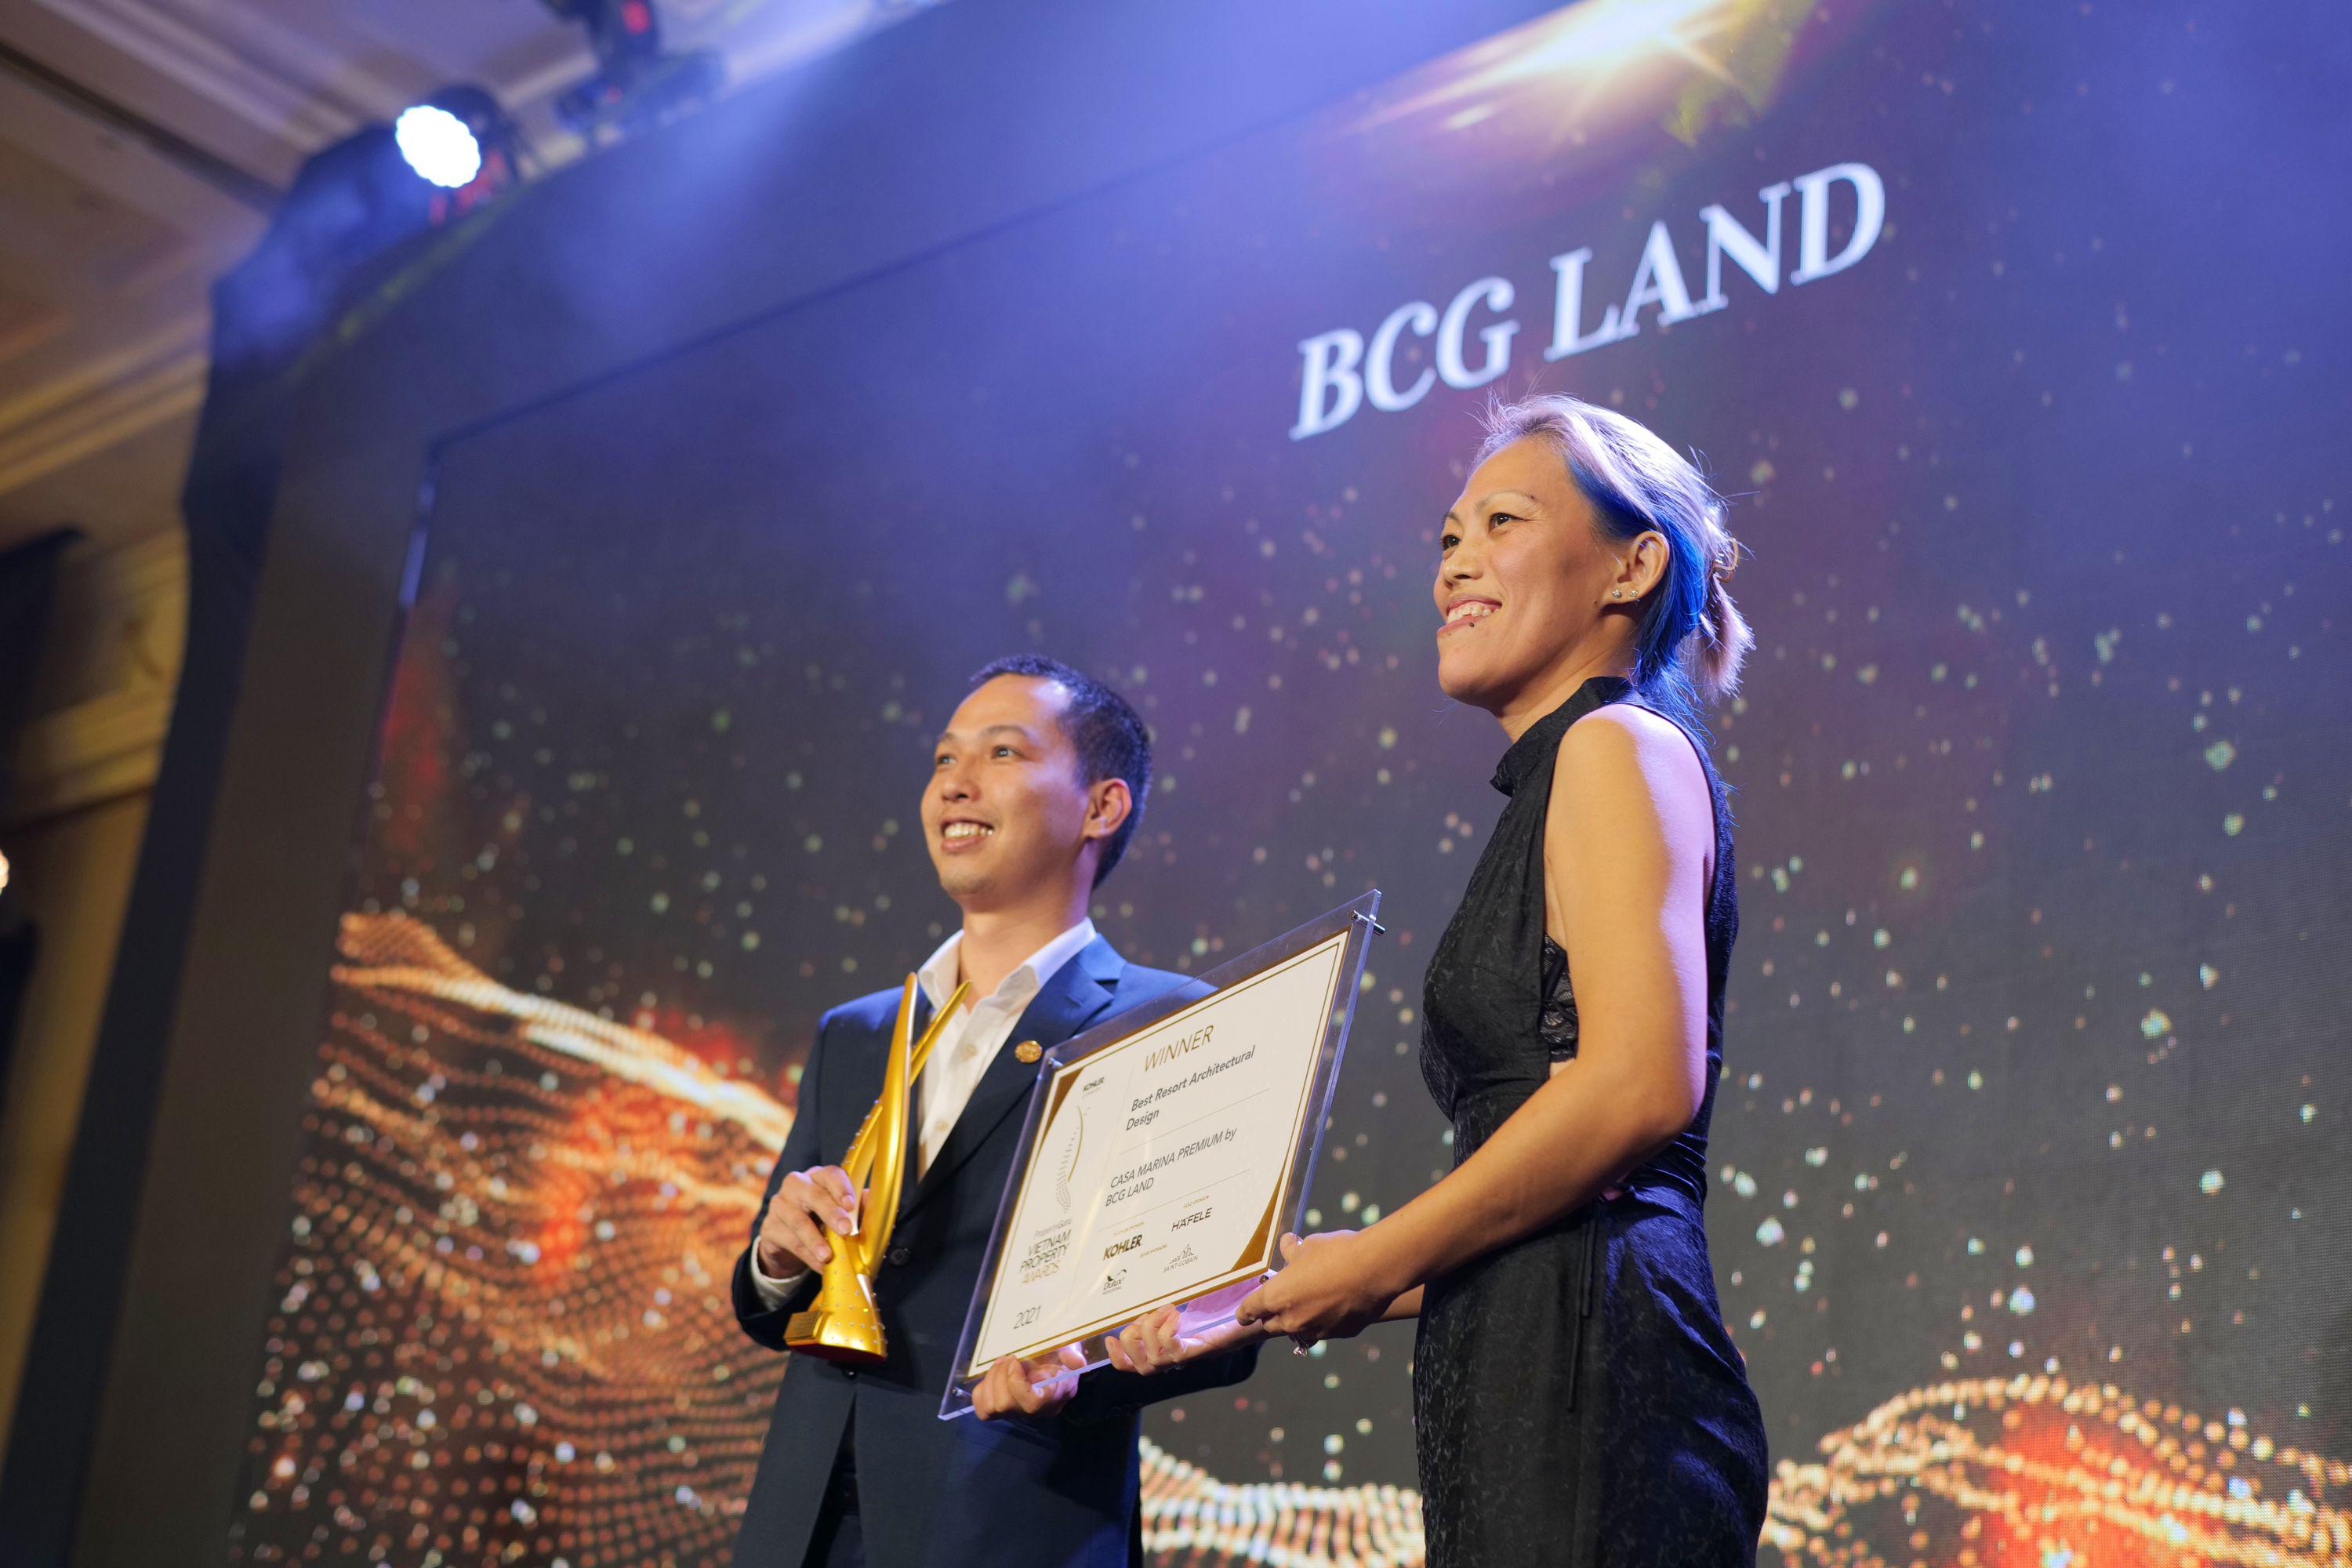 BCG LAND THẮNG LỚN TẠI LỄ TRAO GIẢI PROPERTY GURU VIETNAM AWARDS 2021 VỚI CÚ ĐÚP GIẢI THƯỞNG VỀ THIẾT KẾ KIẾN TRÚC